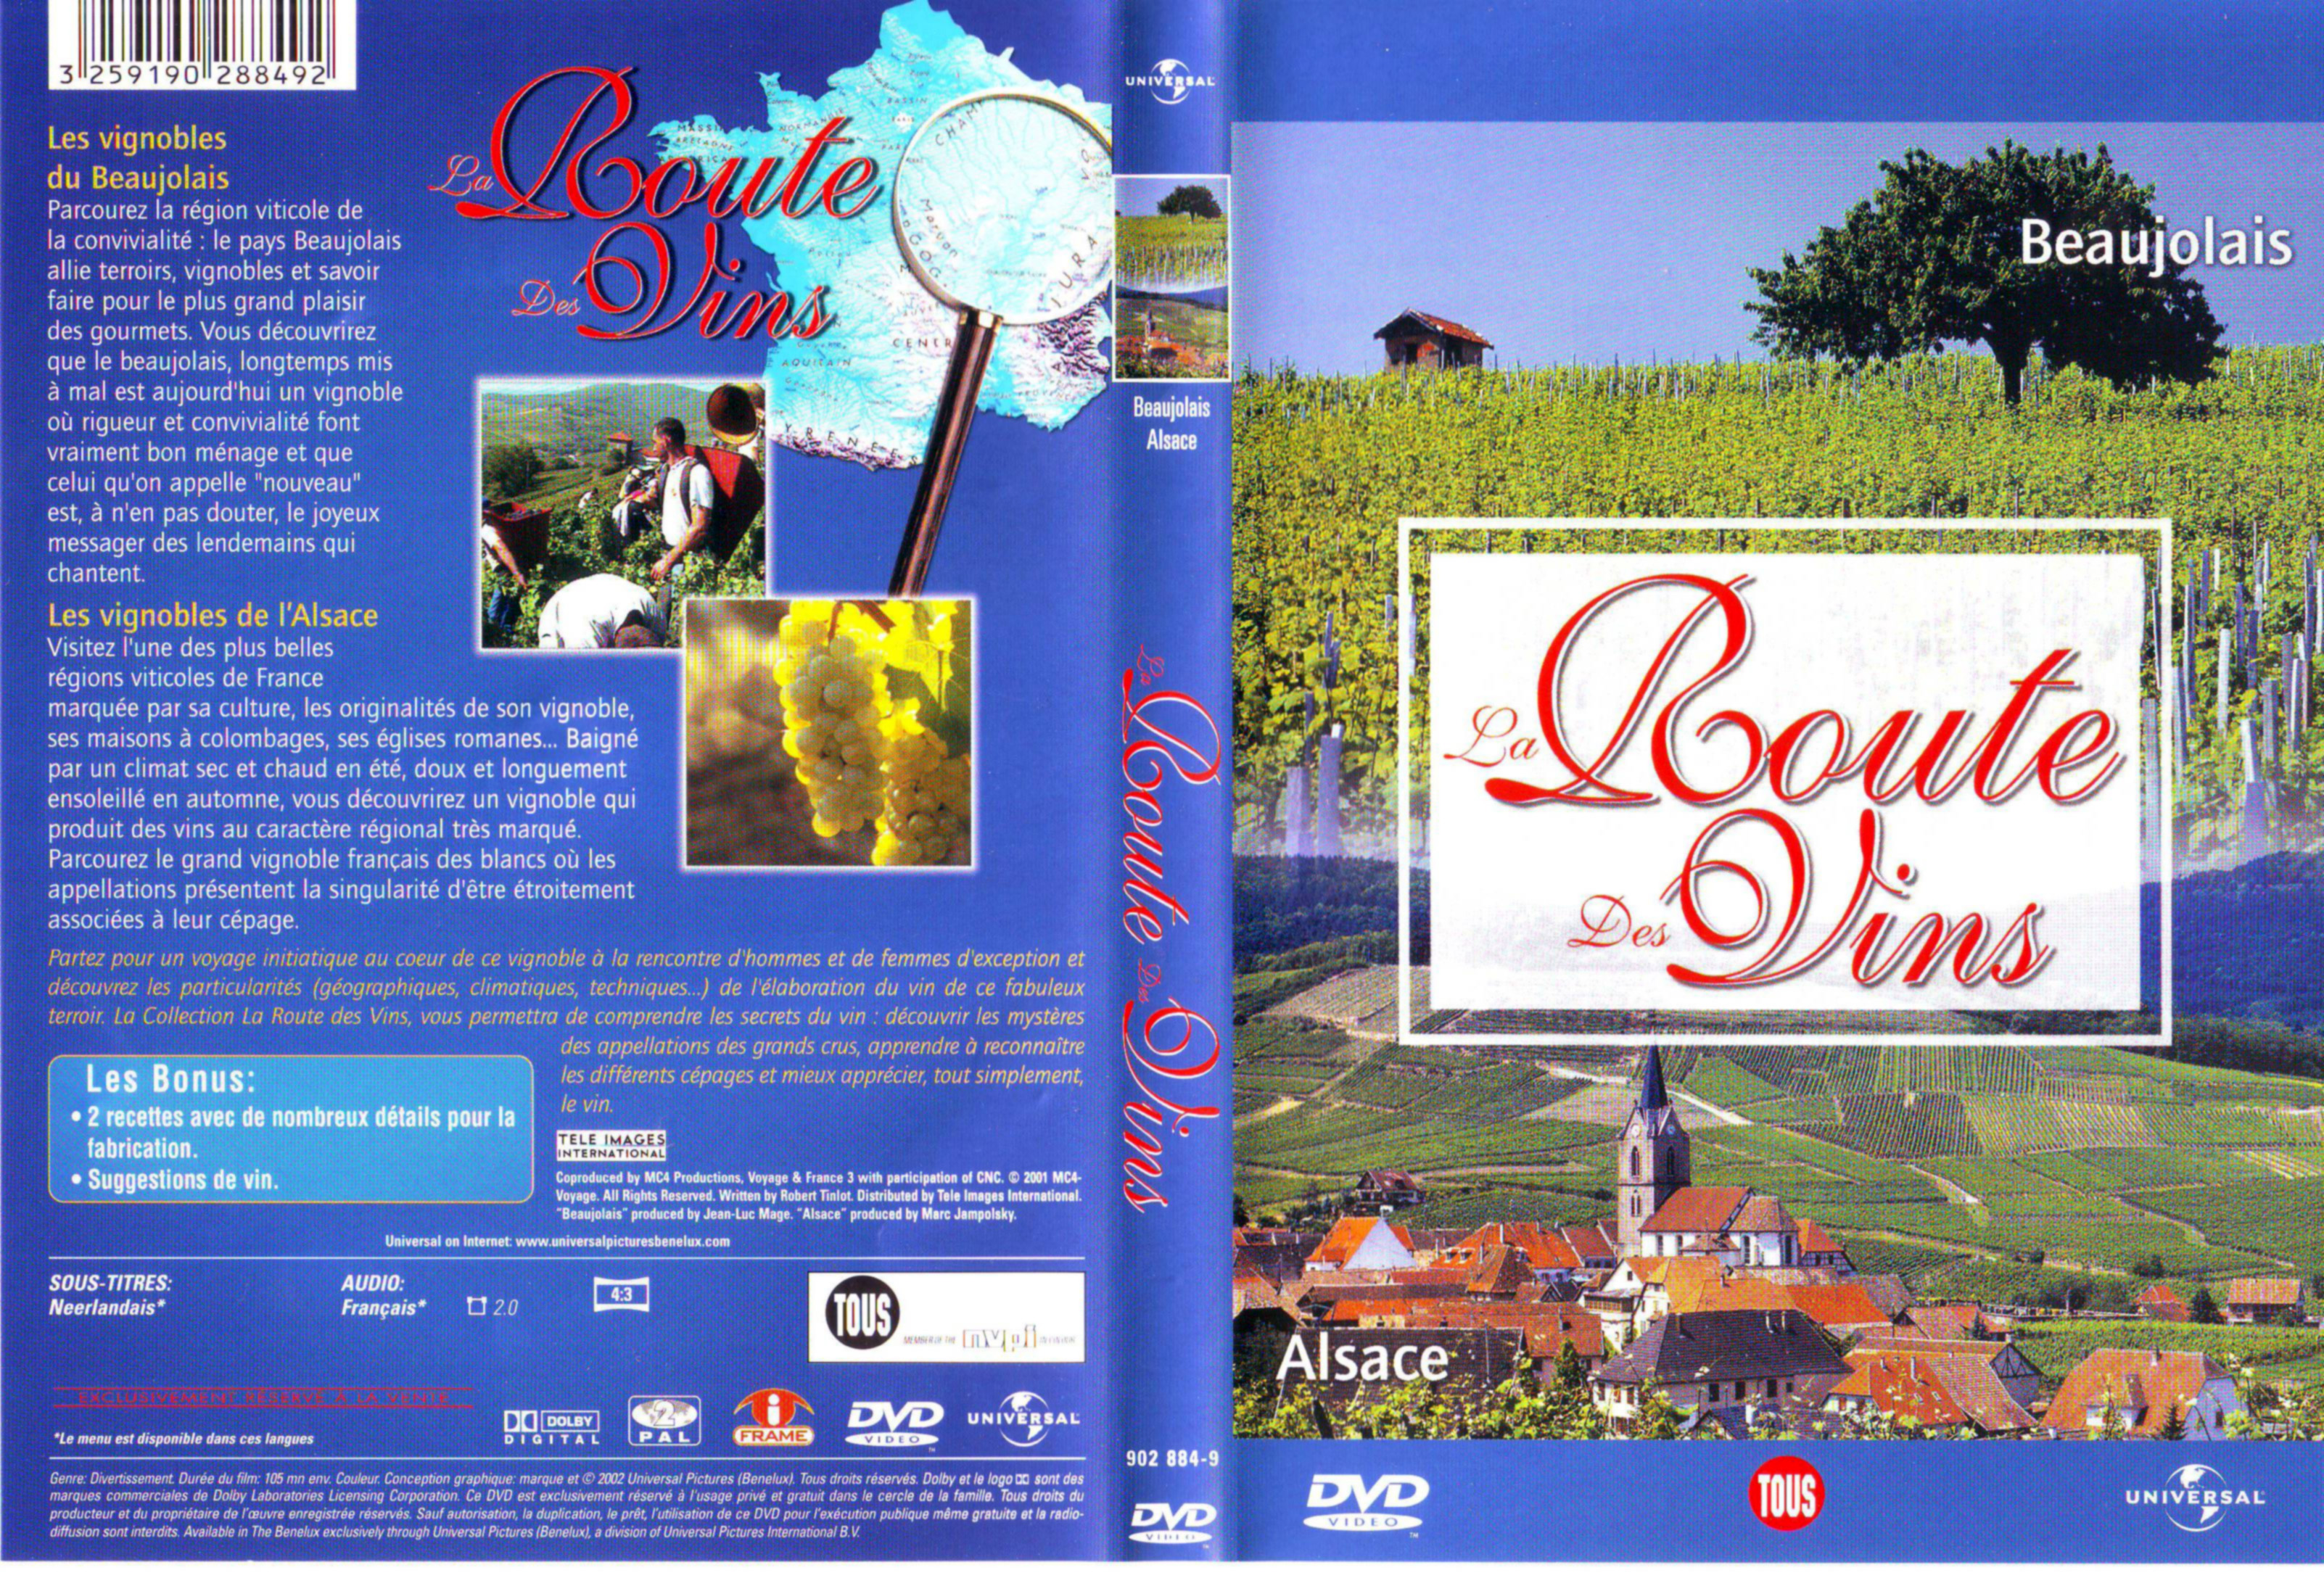 Jaquette DVD La route des vins - Beaujolais Alsace